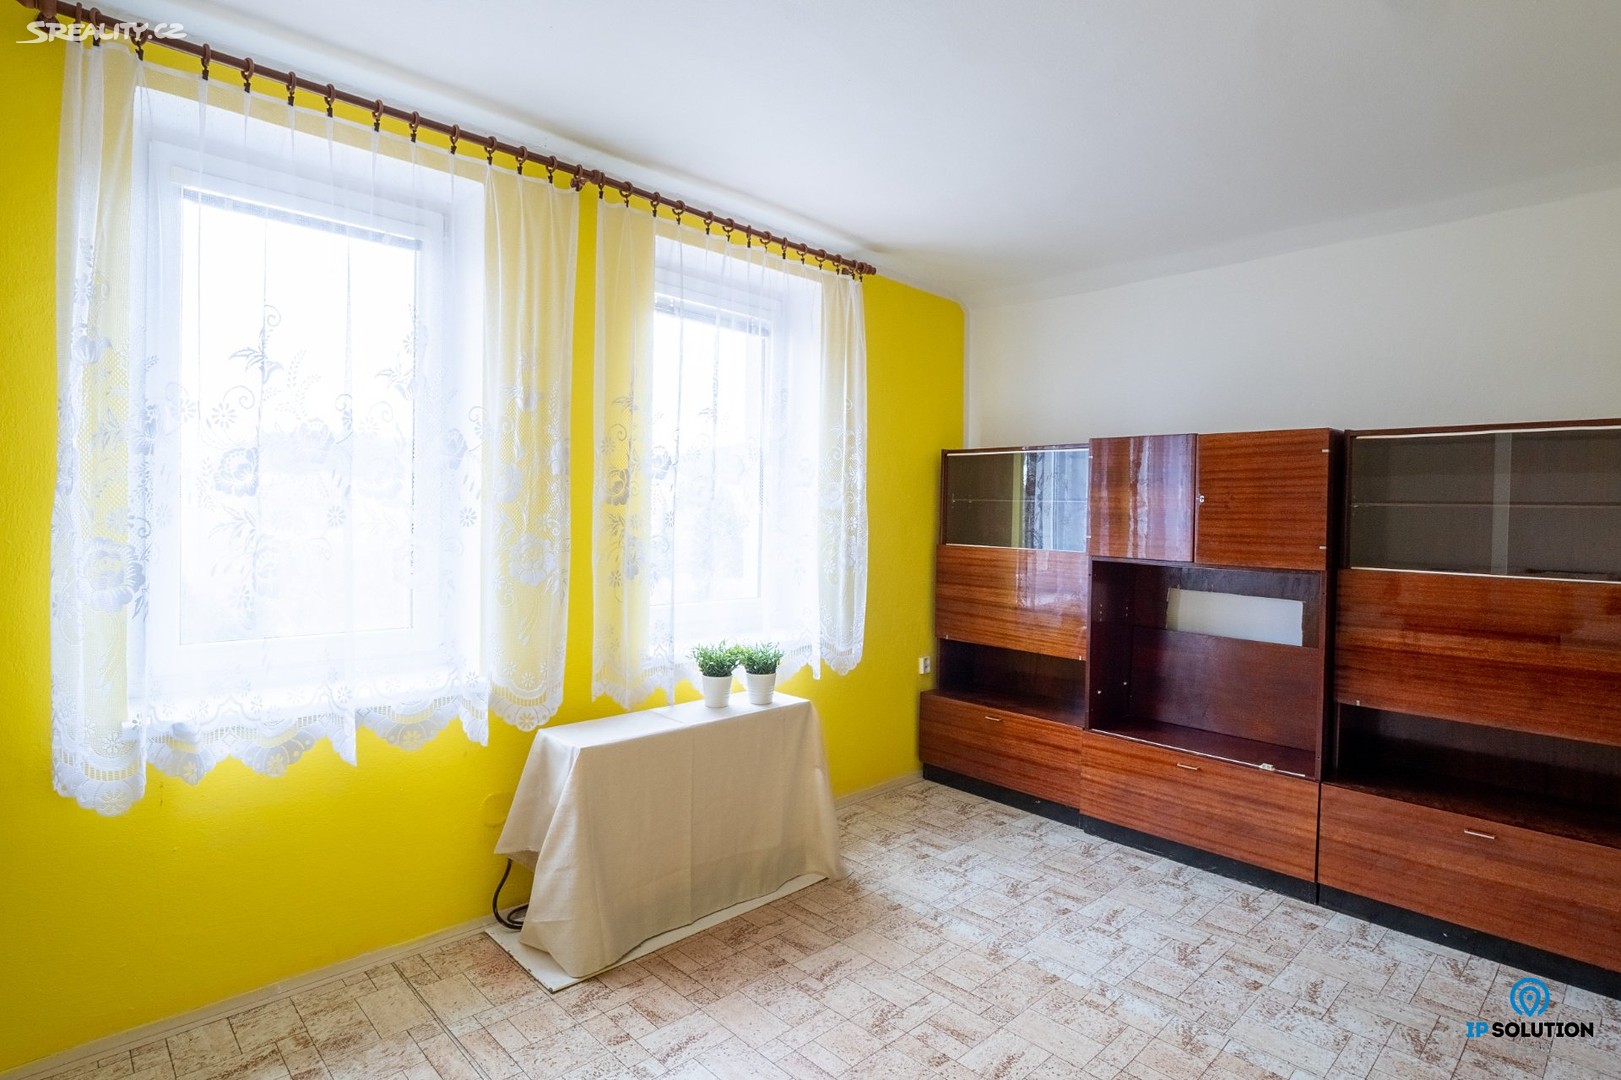 Prodej bytu 1+1 55 m² (Podkrovní), Česká, Horní Dvořiště